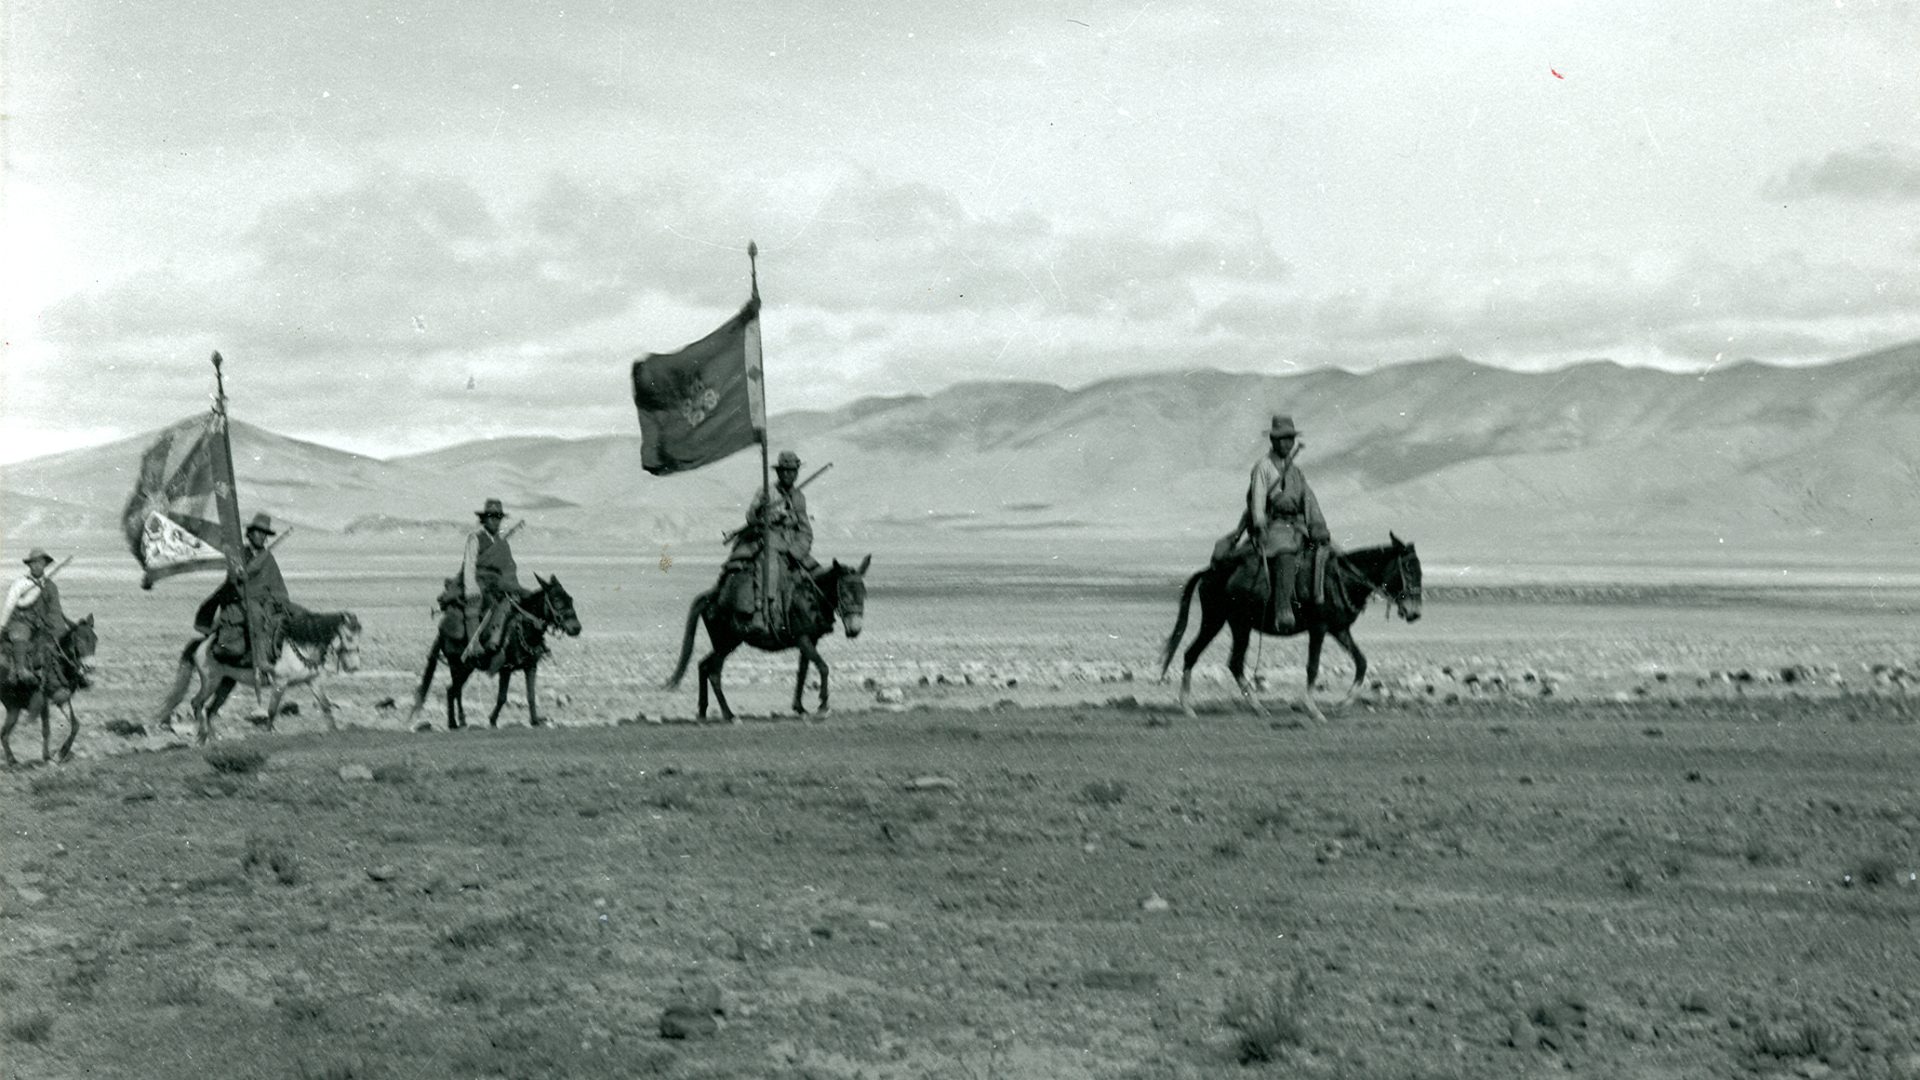 Tibetan Flag in Tibet in the 1940s